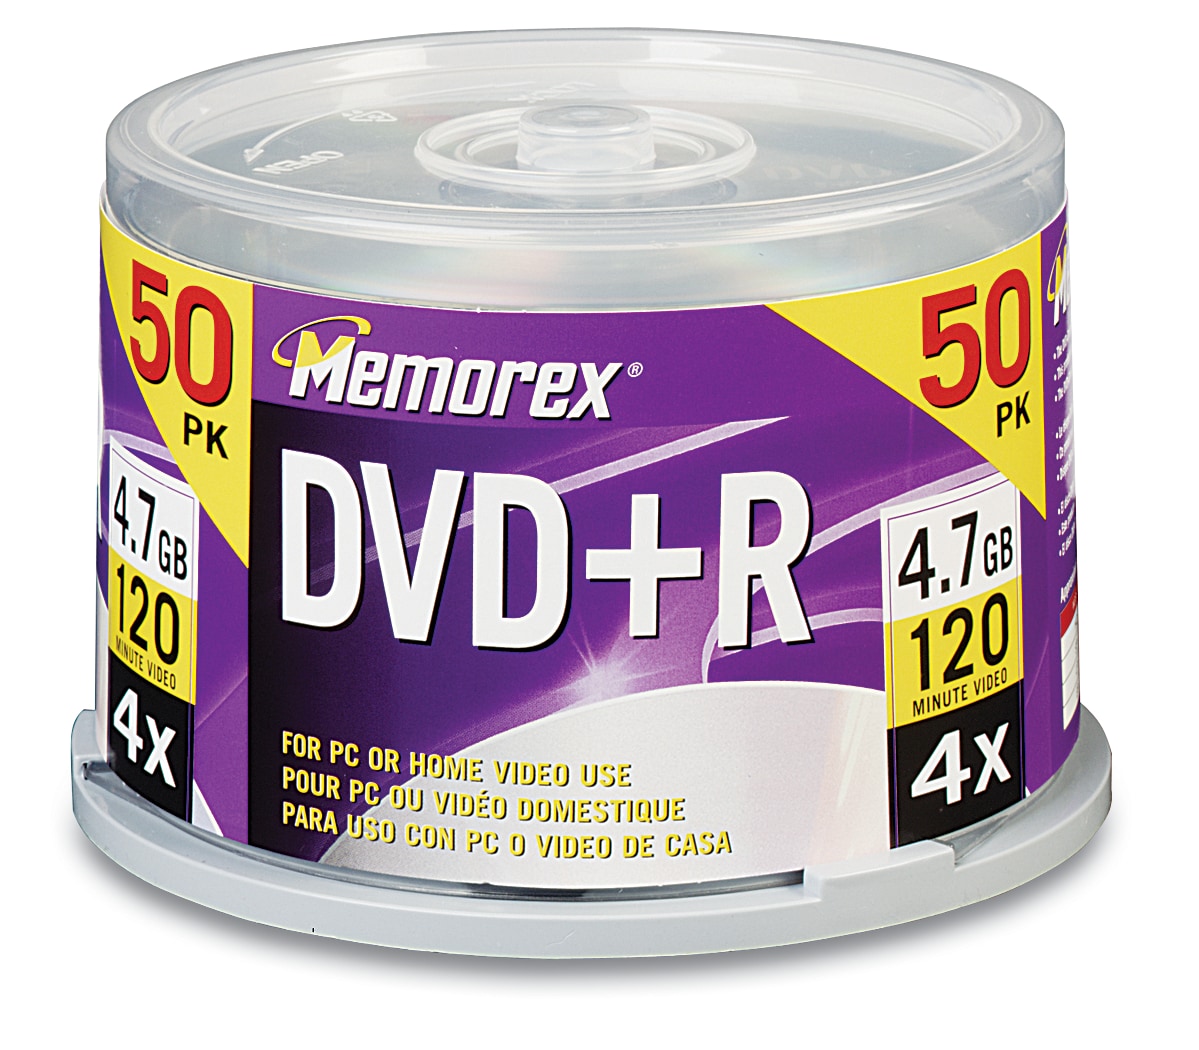 Memorex 4X DVD+R 4.7GB 50PK Spindle